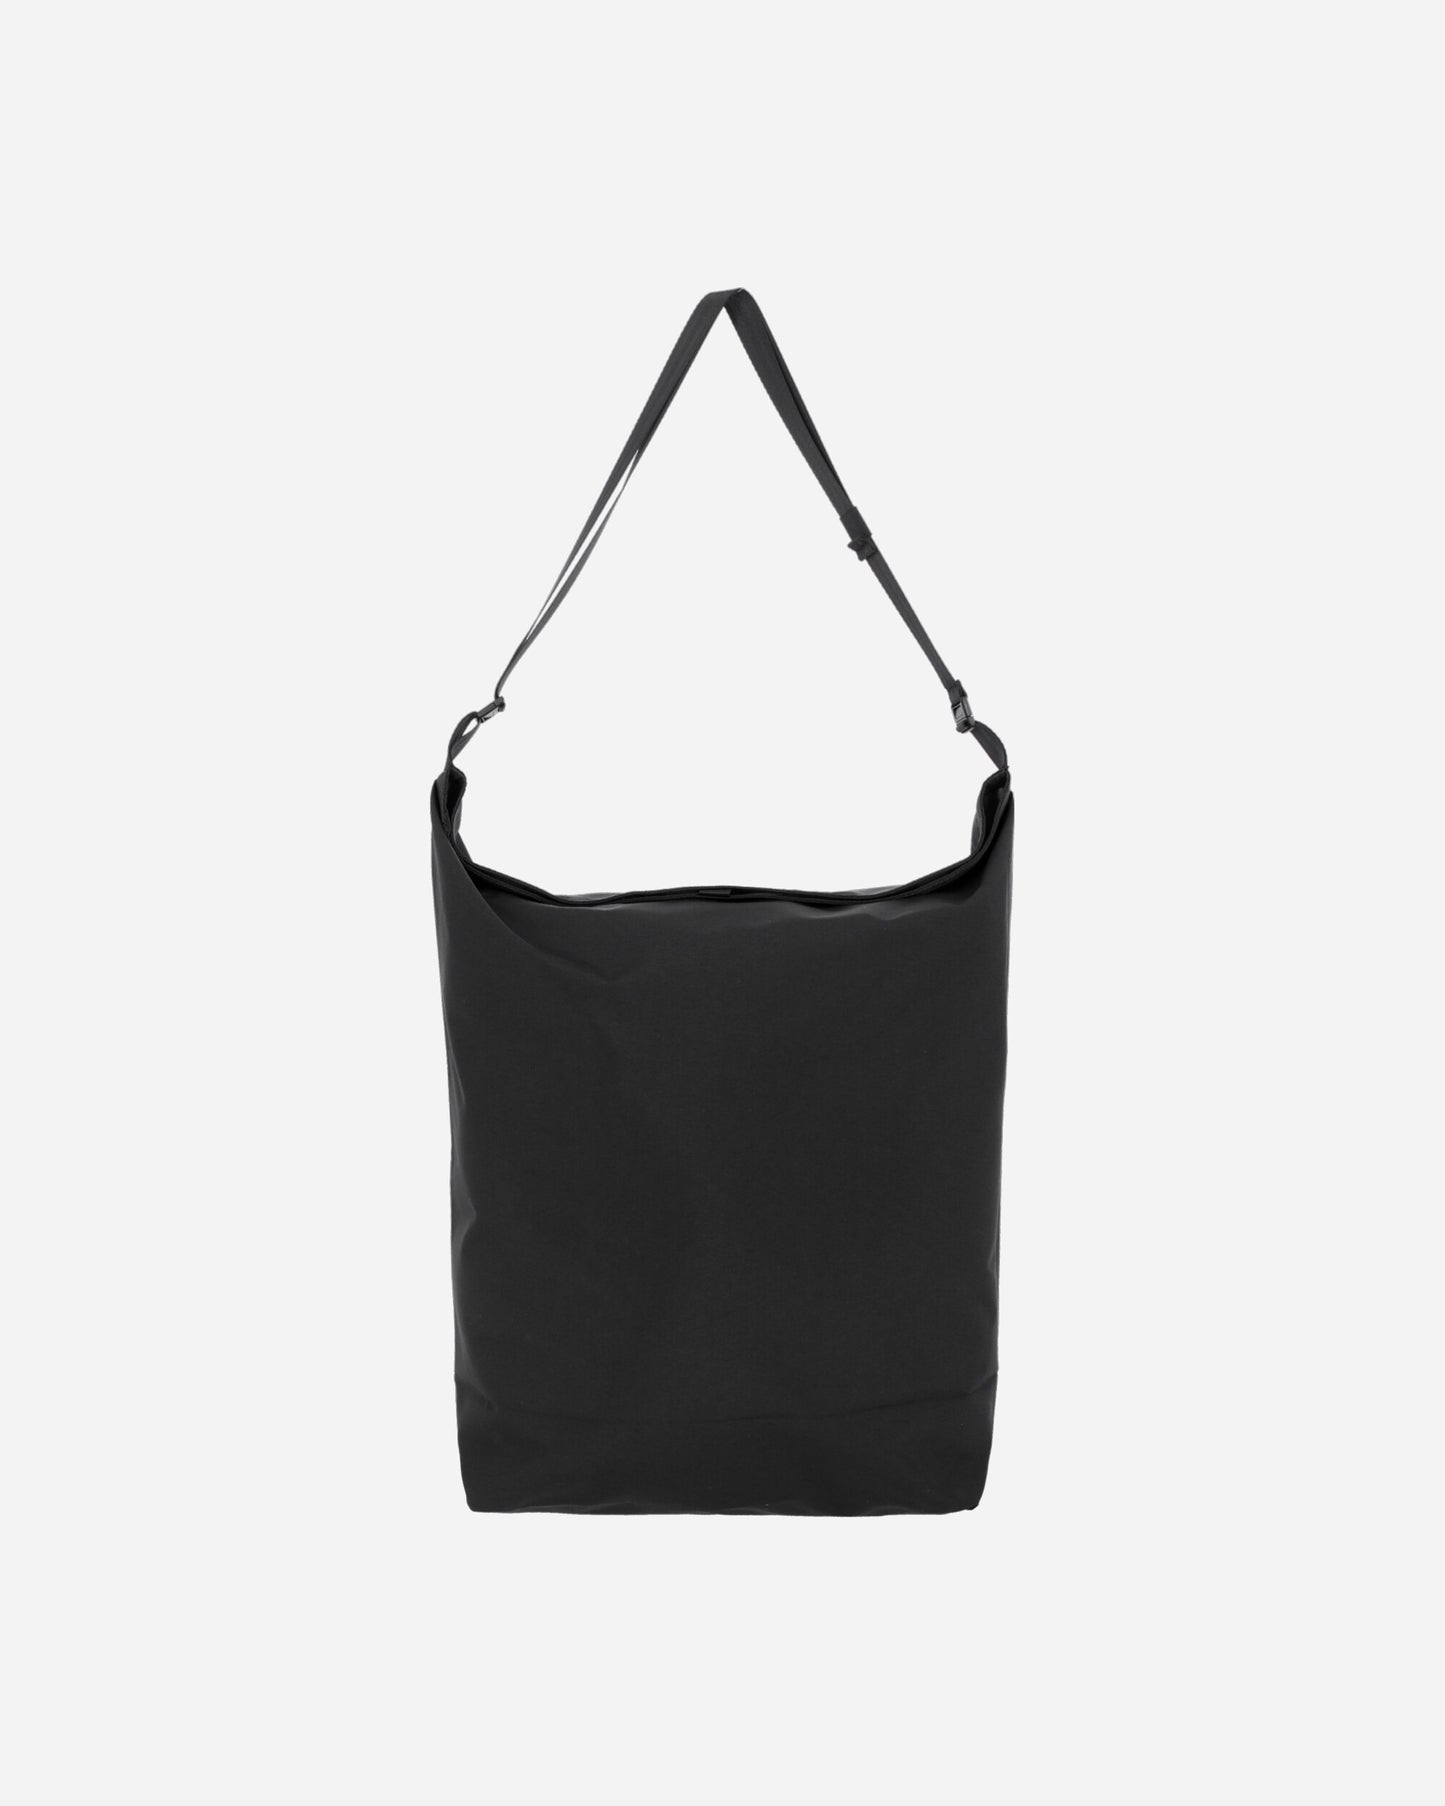 Phingerin Improvisation Bag Black Bags and Backpacks Shoulder Bags PD-241-BG-011 B